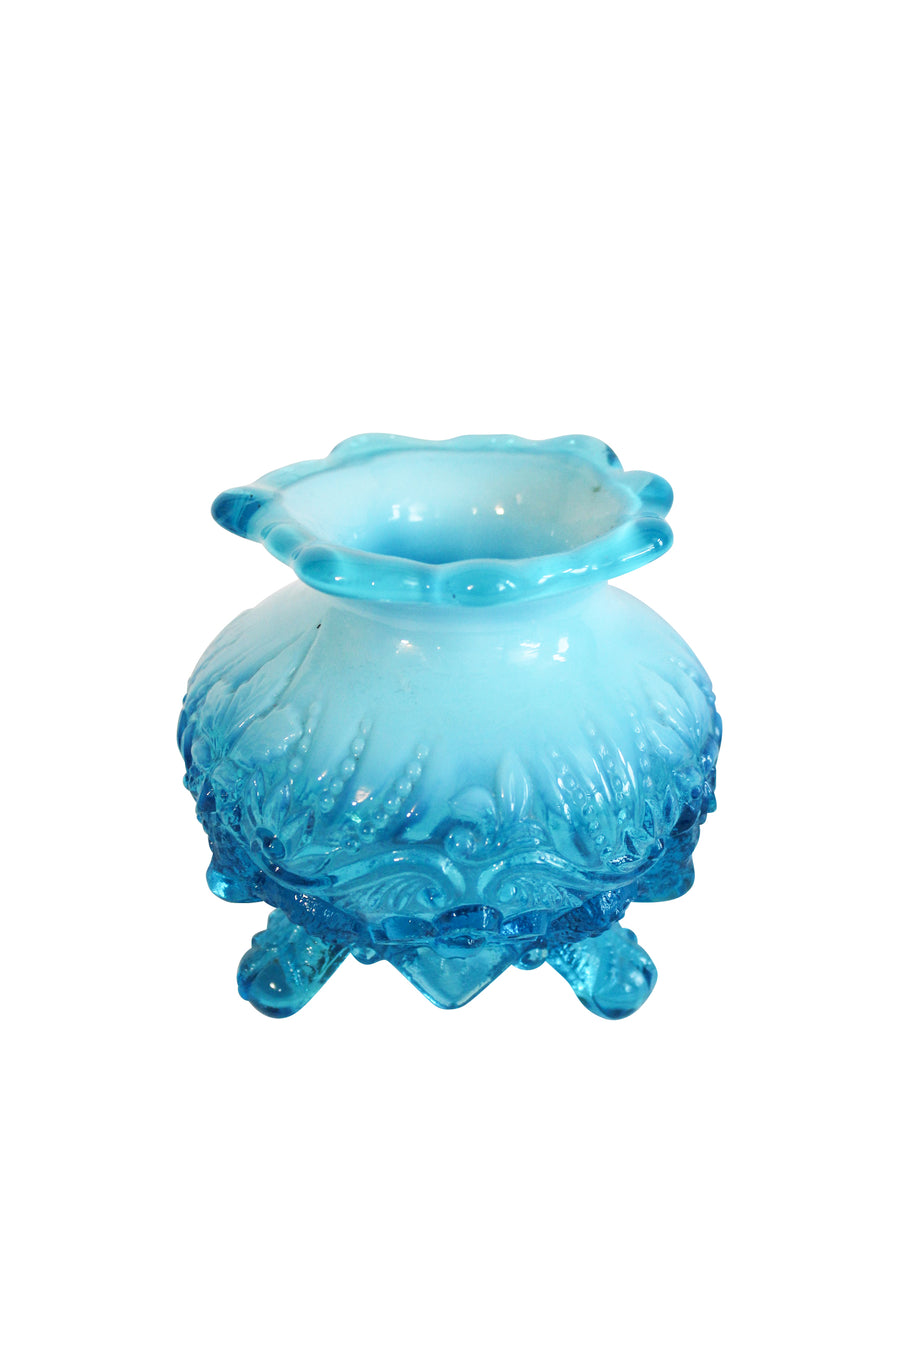 Blue Milkglass Vase